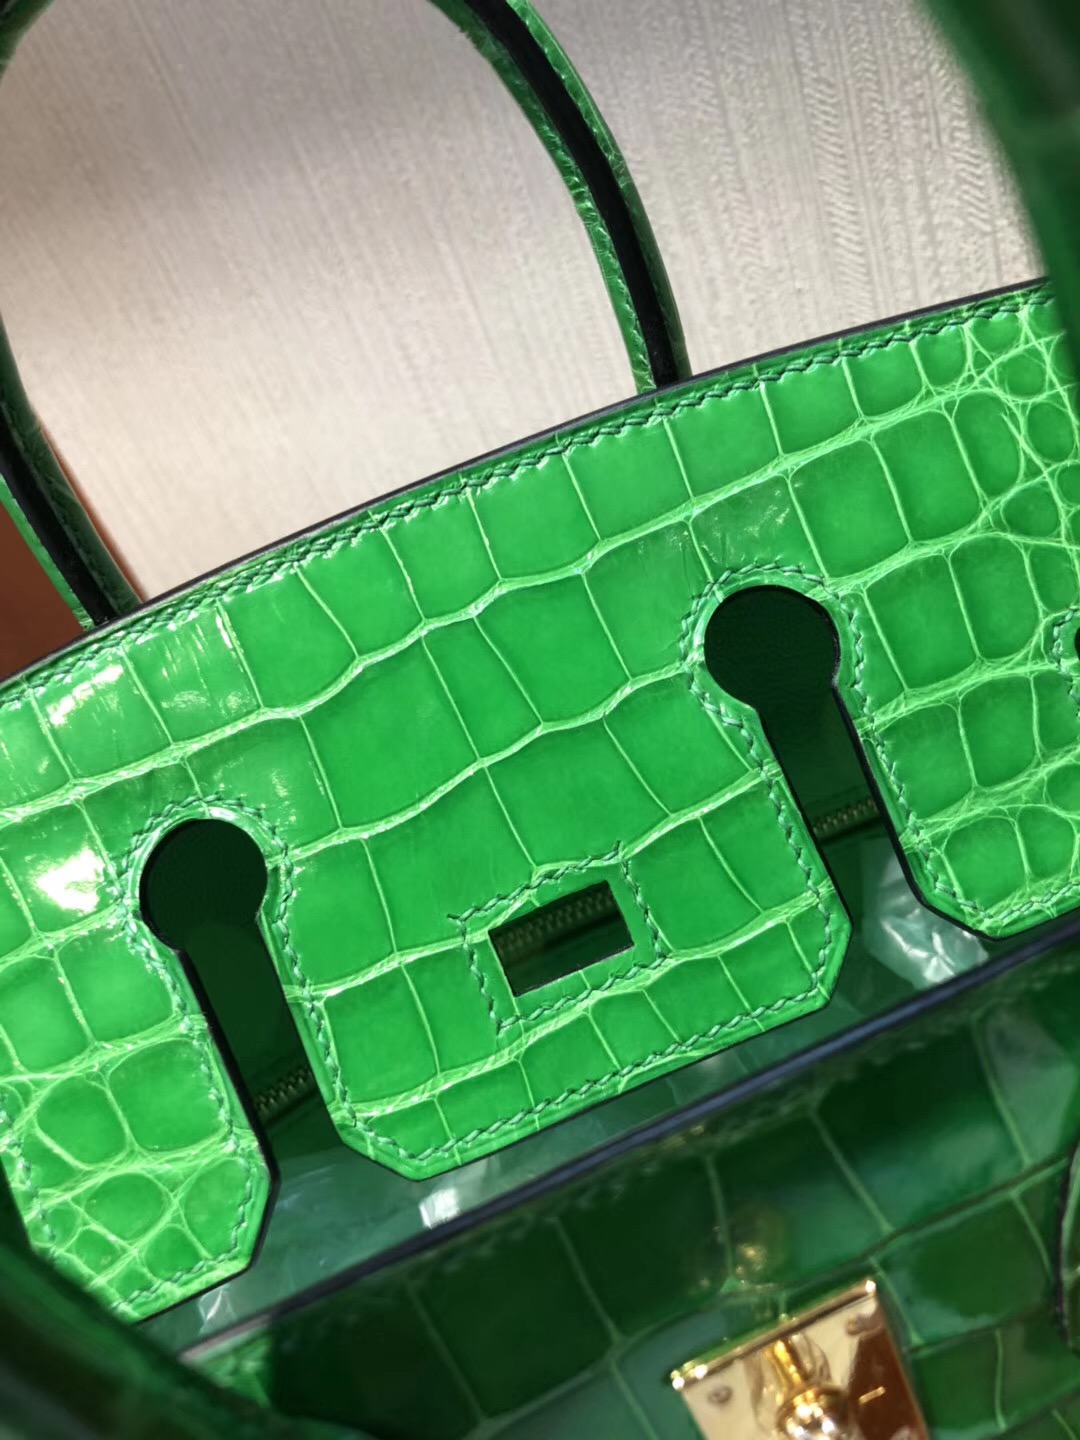 愛馬仕2018新款包包Hermes 1L仙人掌綠色 Birkin 25 方塊 美洲鱷魚完美紋路 金扣